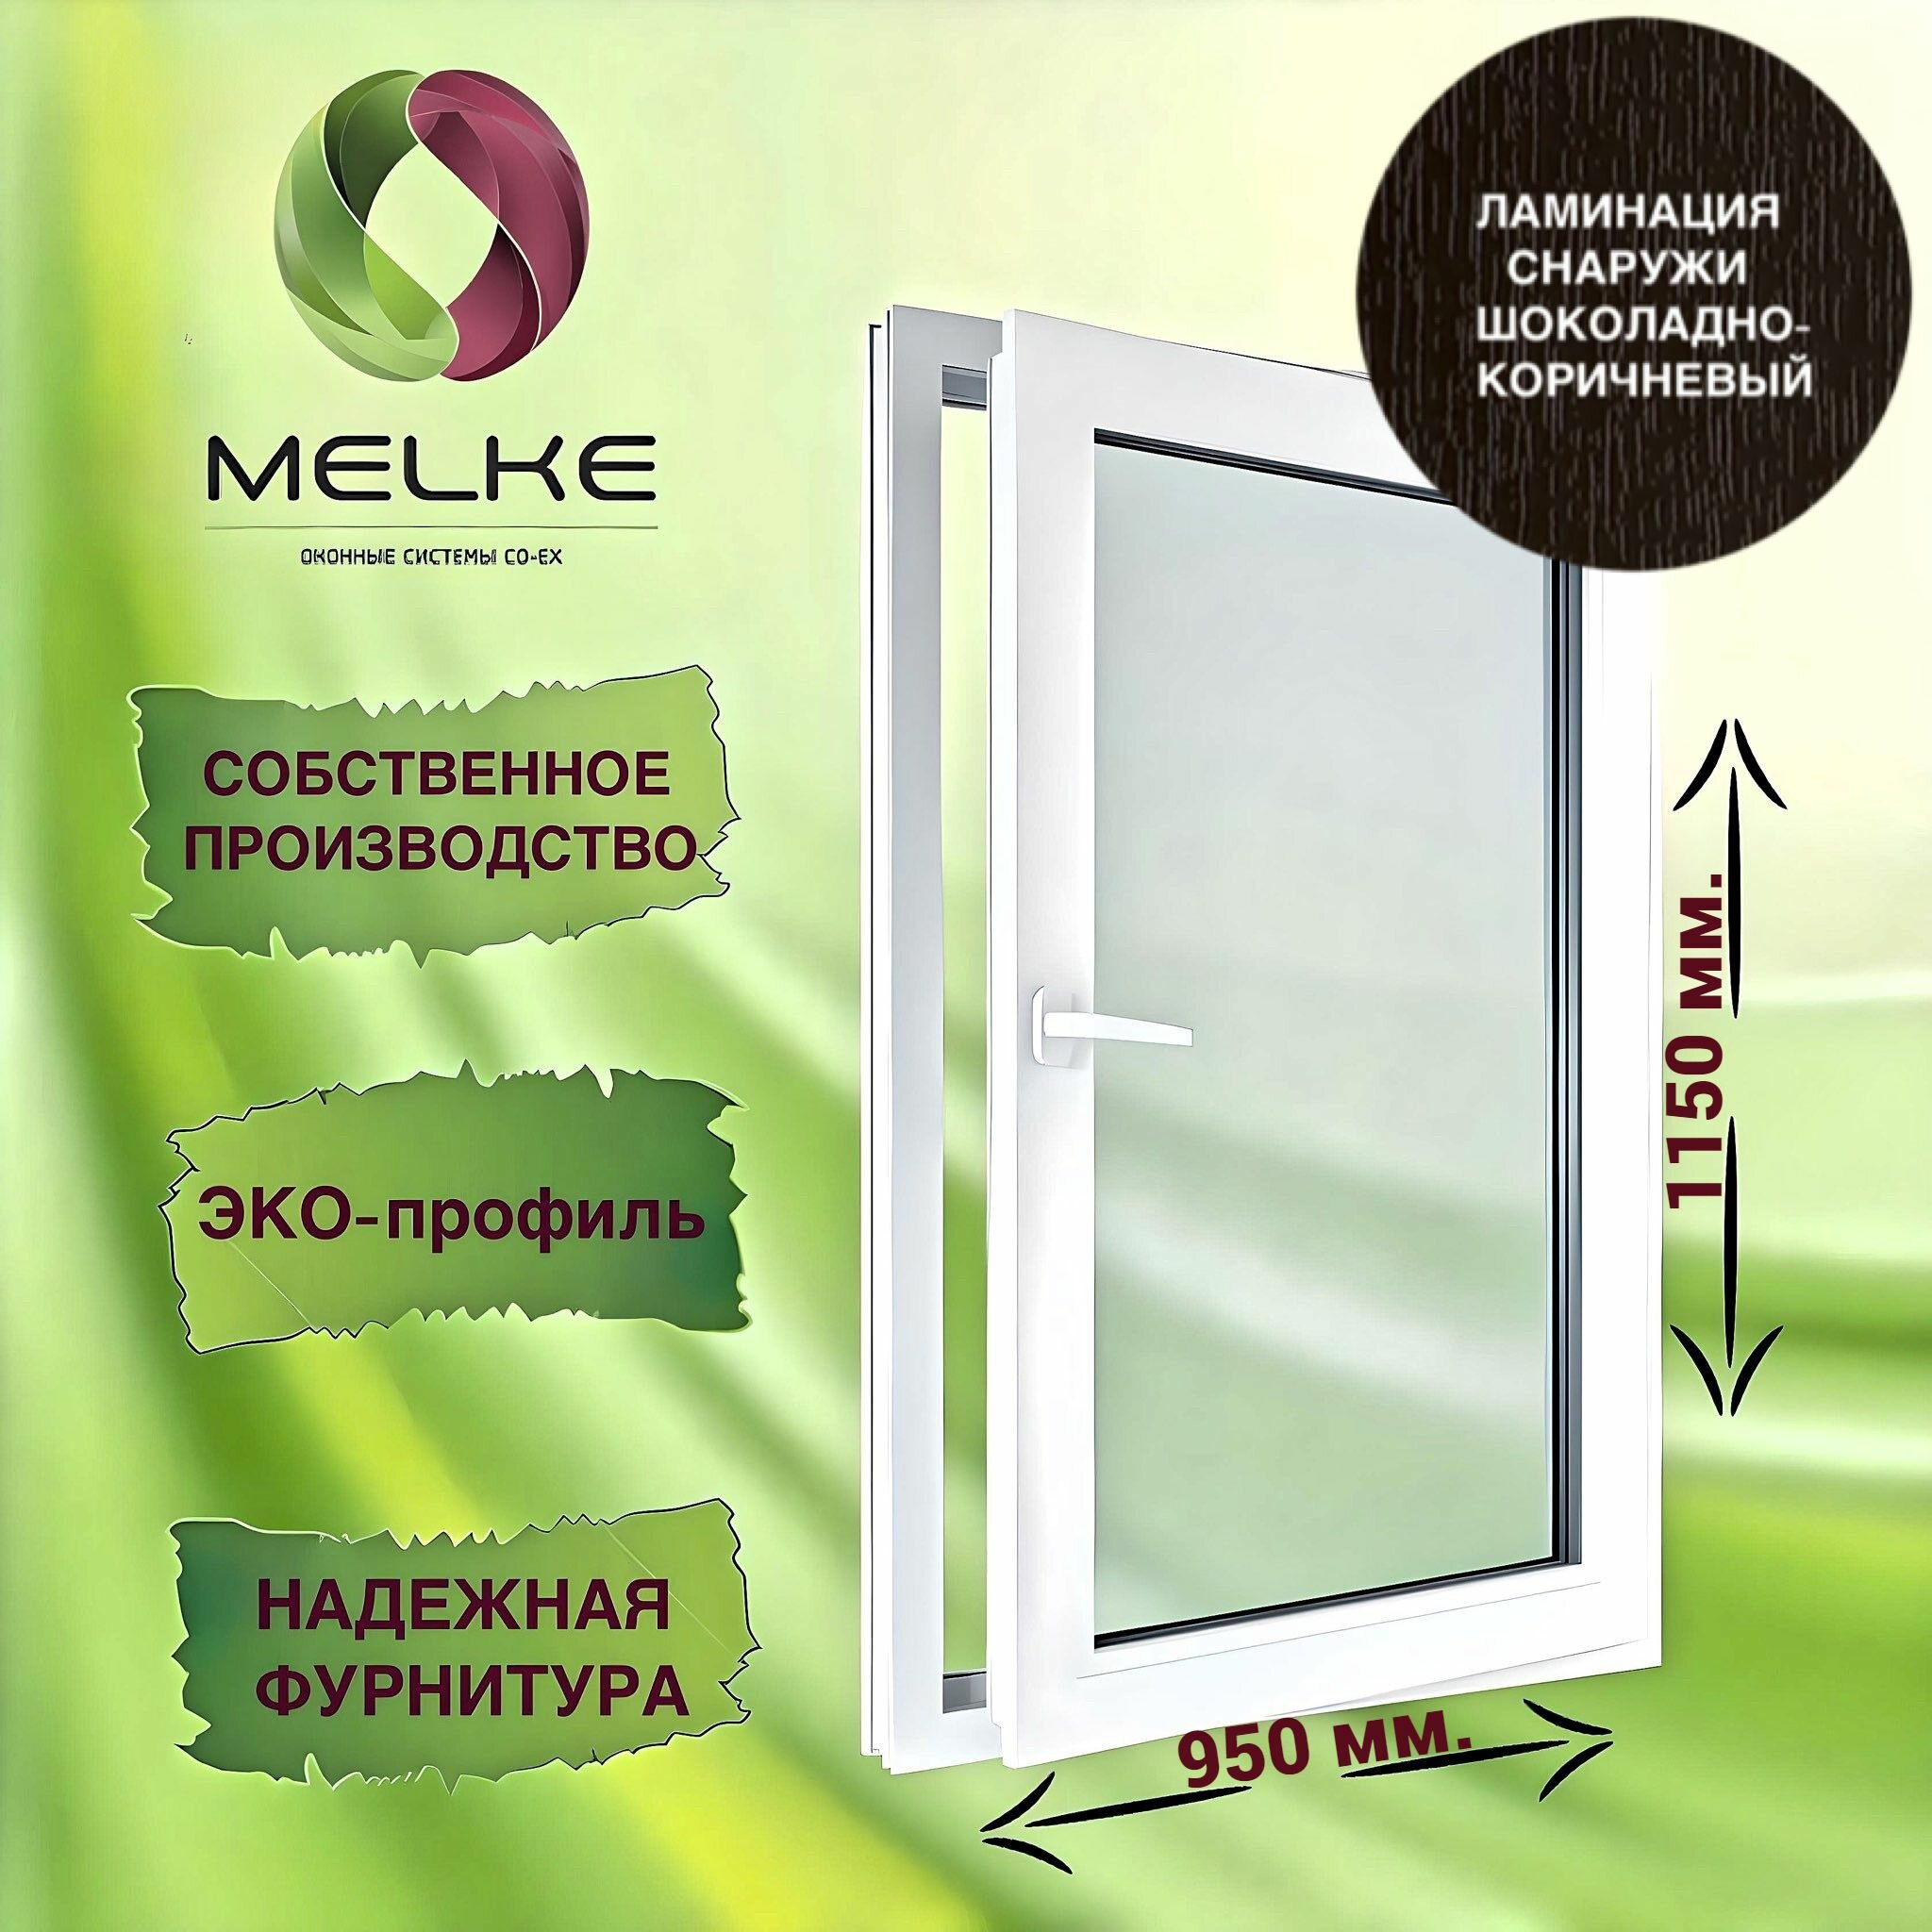 Окно 1150 х 950 мм, Melke 60 (Фурнитура FUTURUSS), правое одностворчатое, поворотно-откидное, цвет внешней ламинации Шоколадно-коричневый, 2-х камерный стеклопакет, 3 стекла